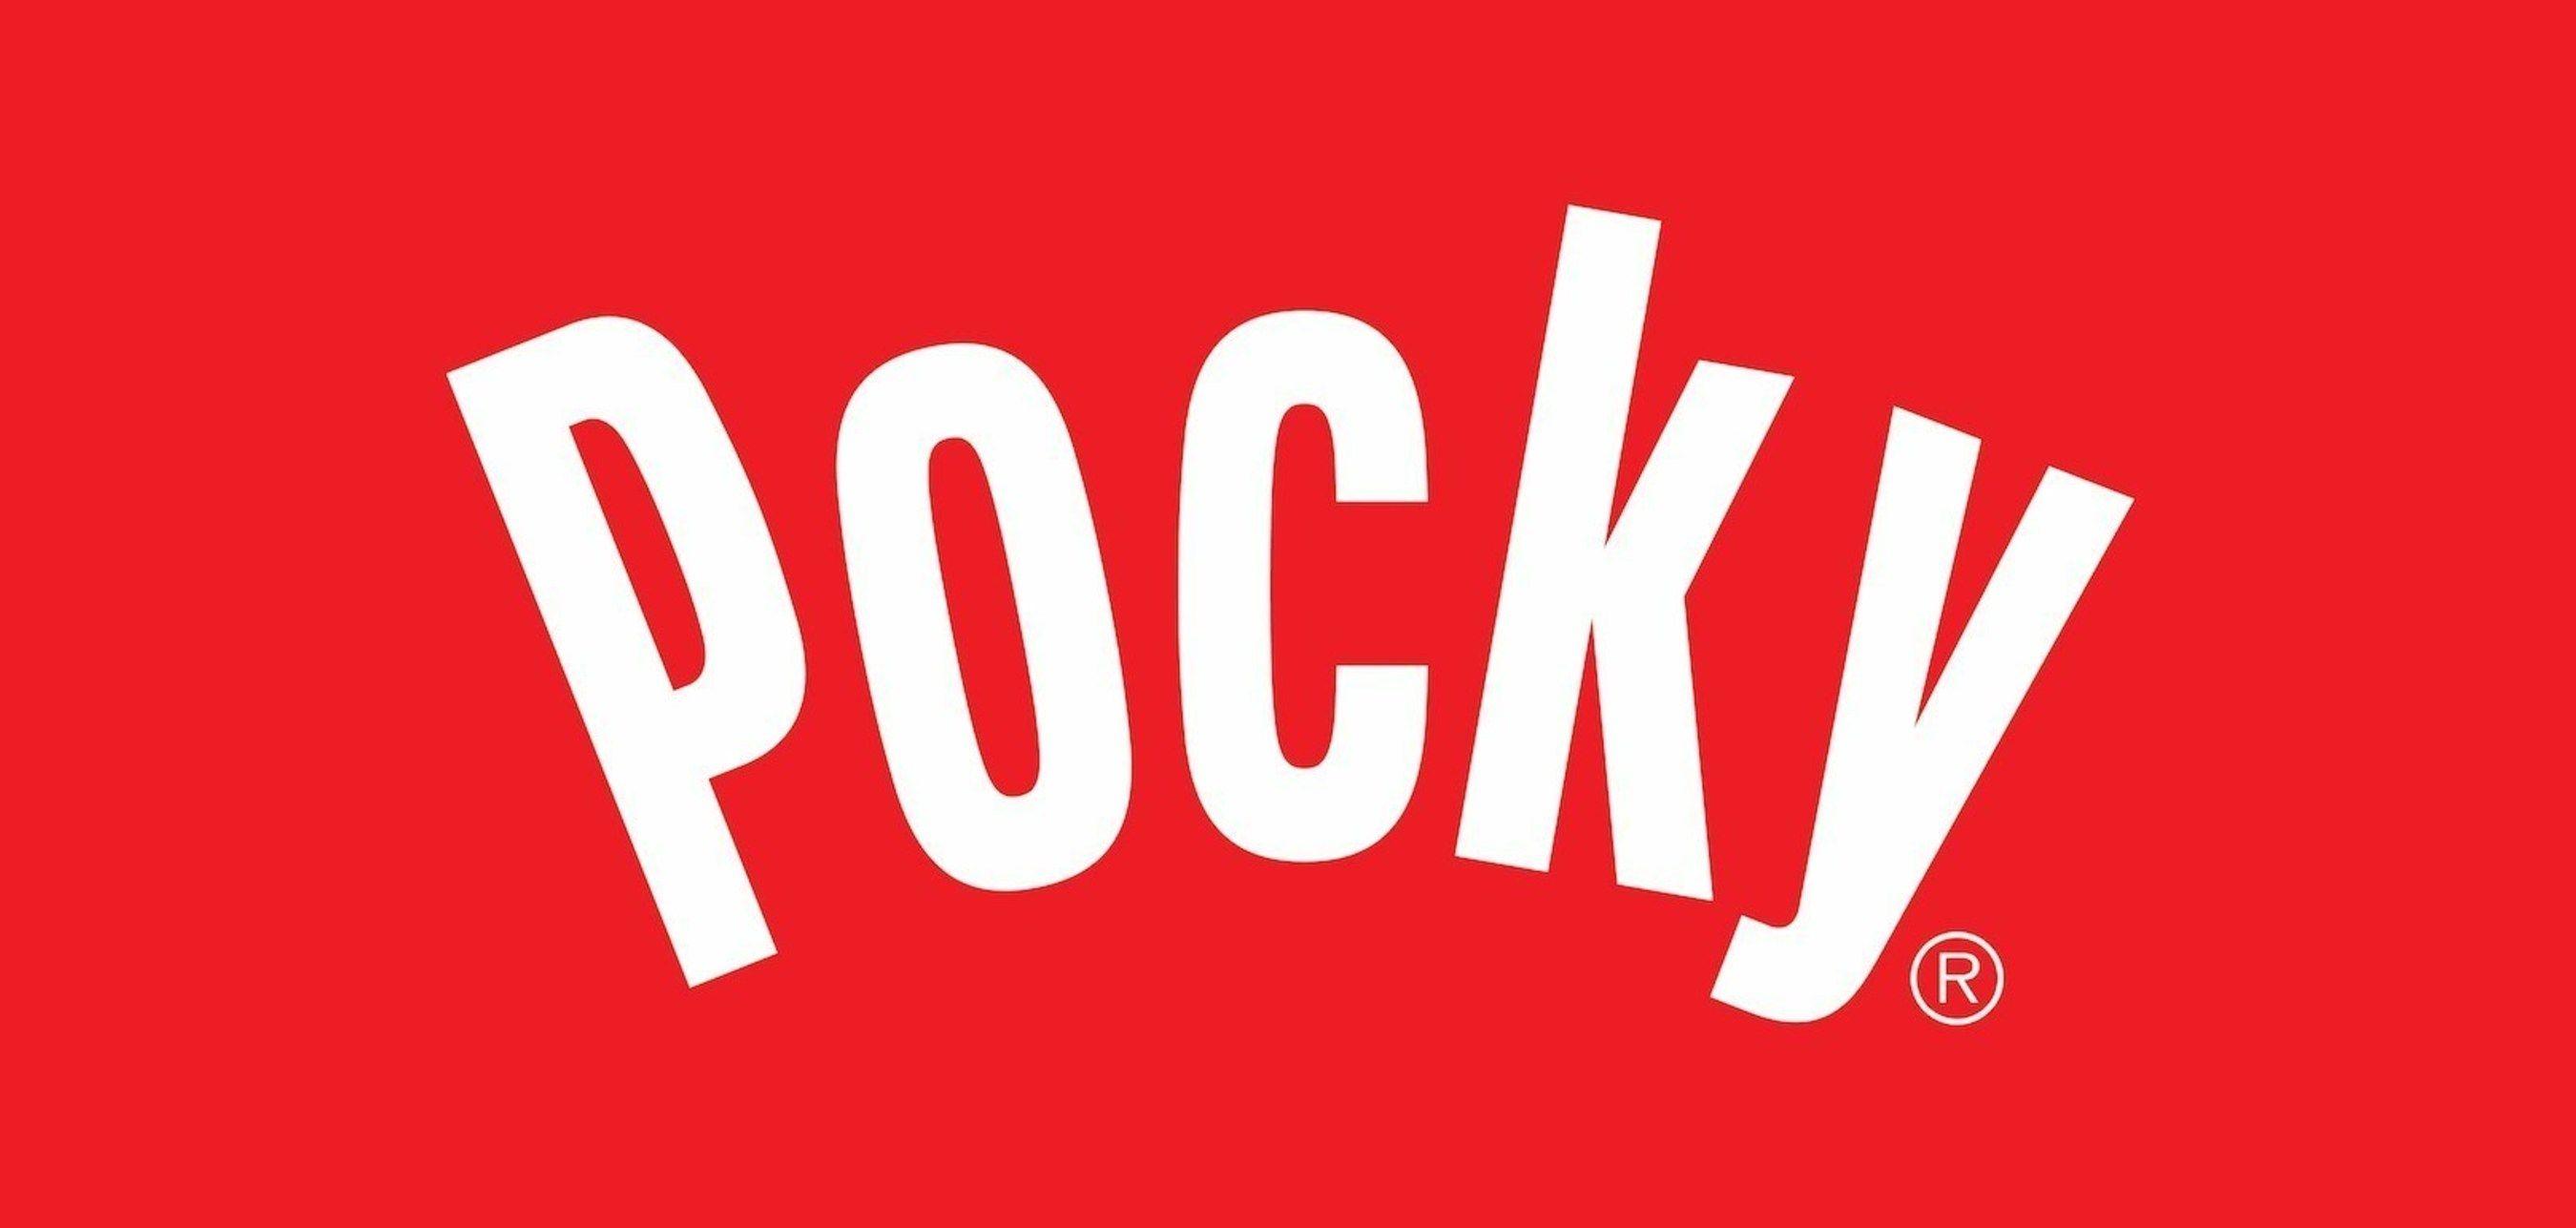 Glico Logo - Ezaki Glico USA's Pocky Brand Celebrates 50th Anniversary